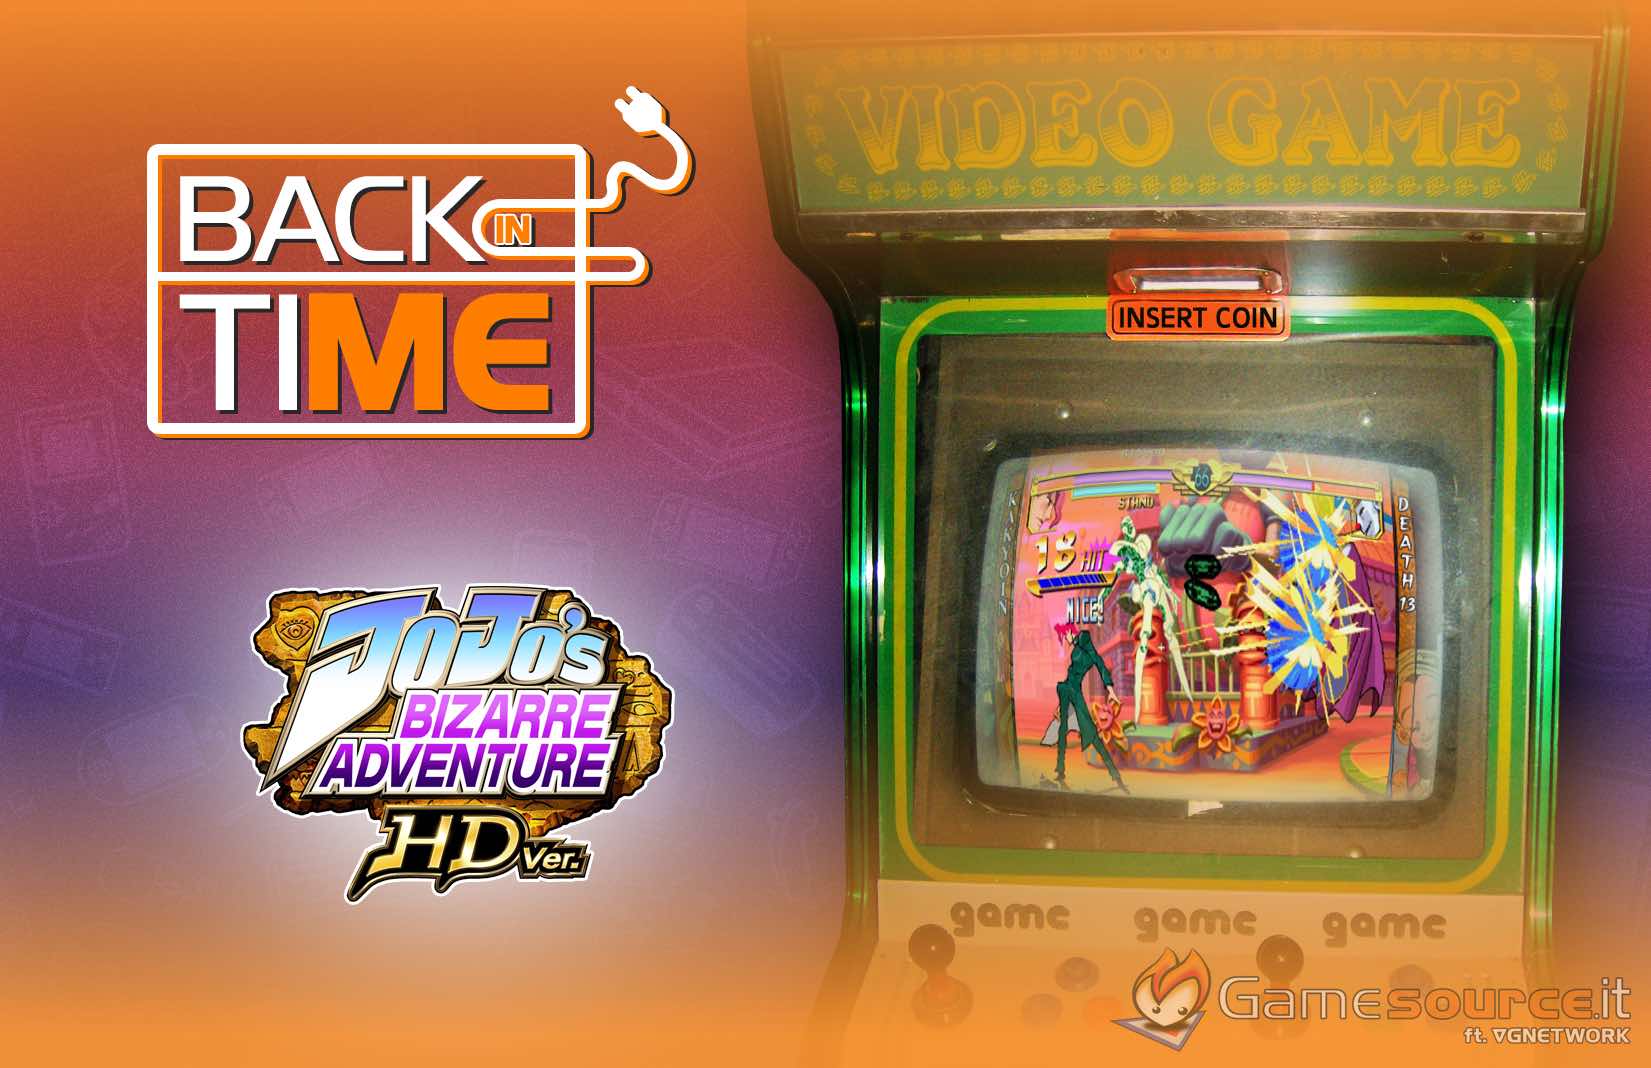 Back in Time – Jojo’s Bizarre Adventure HD Ver.